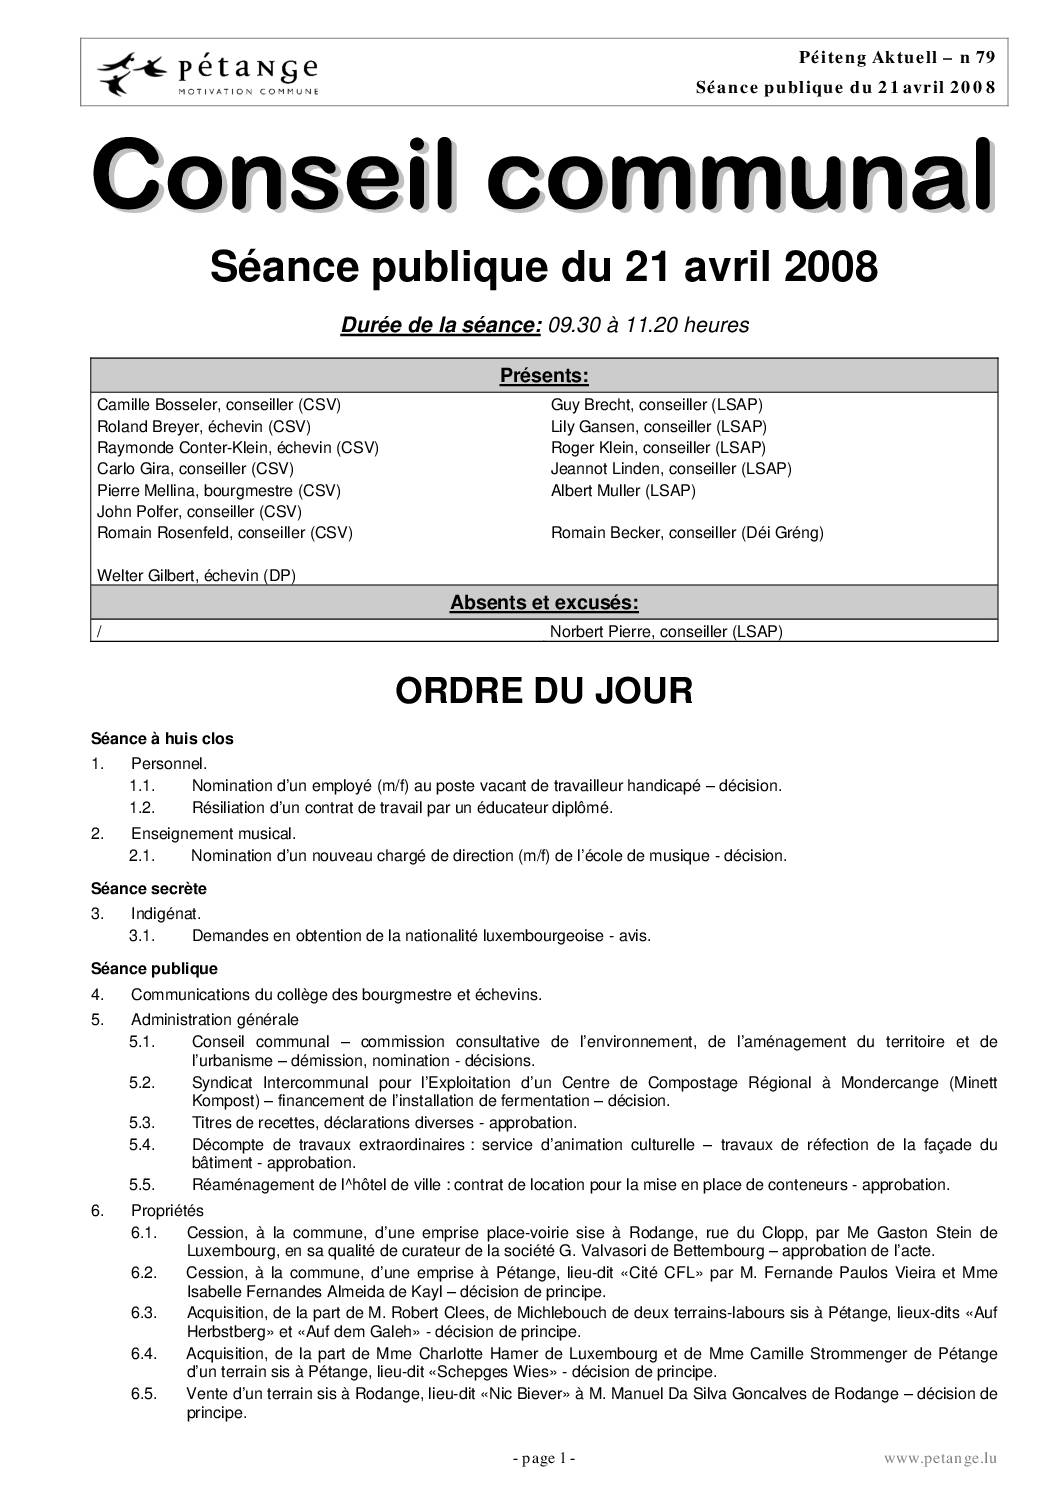 Rapport des séances du conseil communal du 21.04.2008 et 19.05.2008